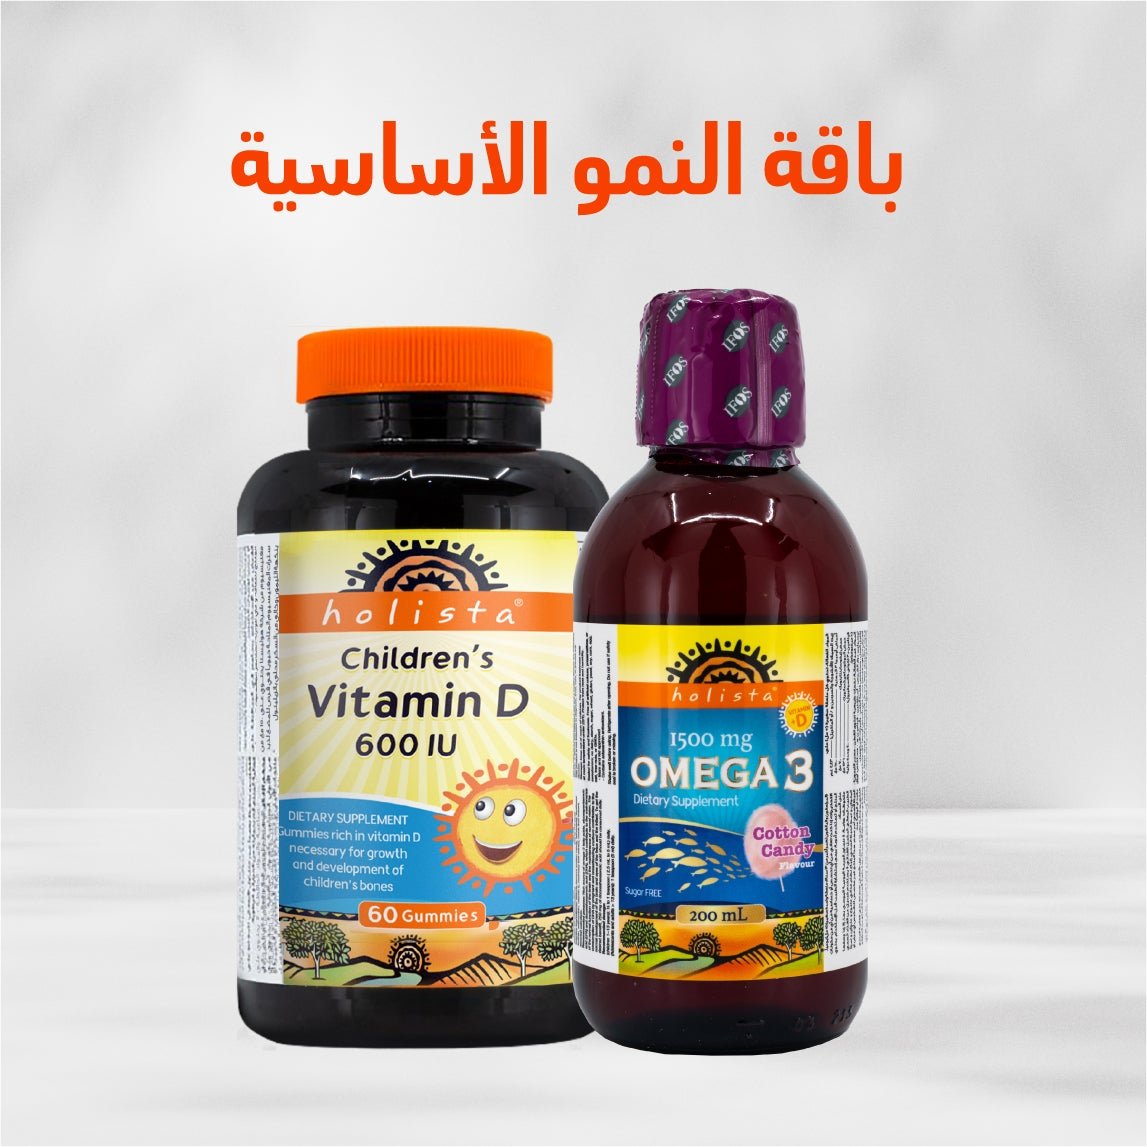 باقة النمو الأساسية فيتامين د و أوميجا 3 للأطفال - متجر ديرمازون الالكتروني - Dermazone Store